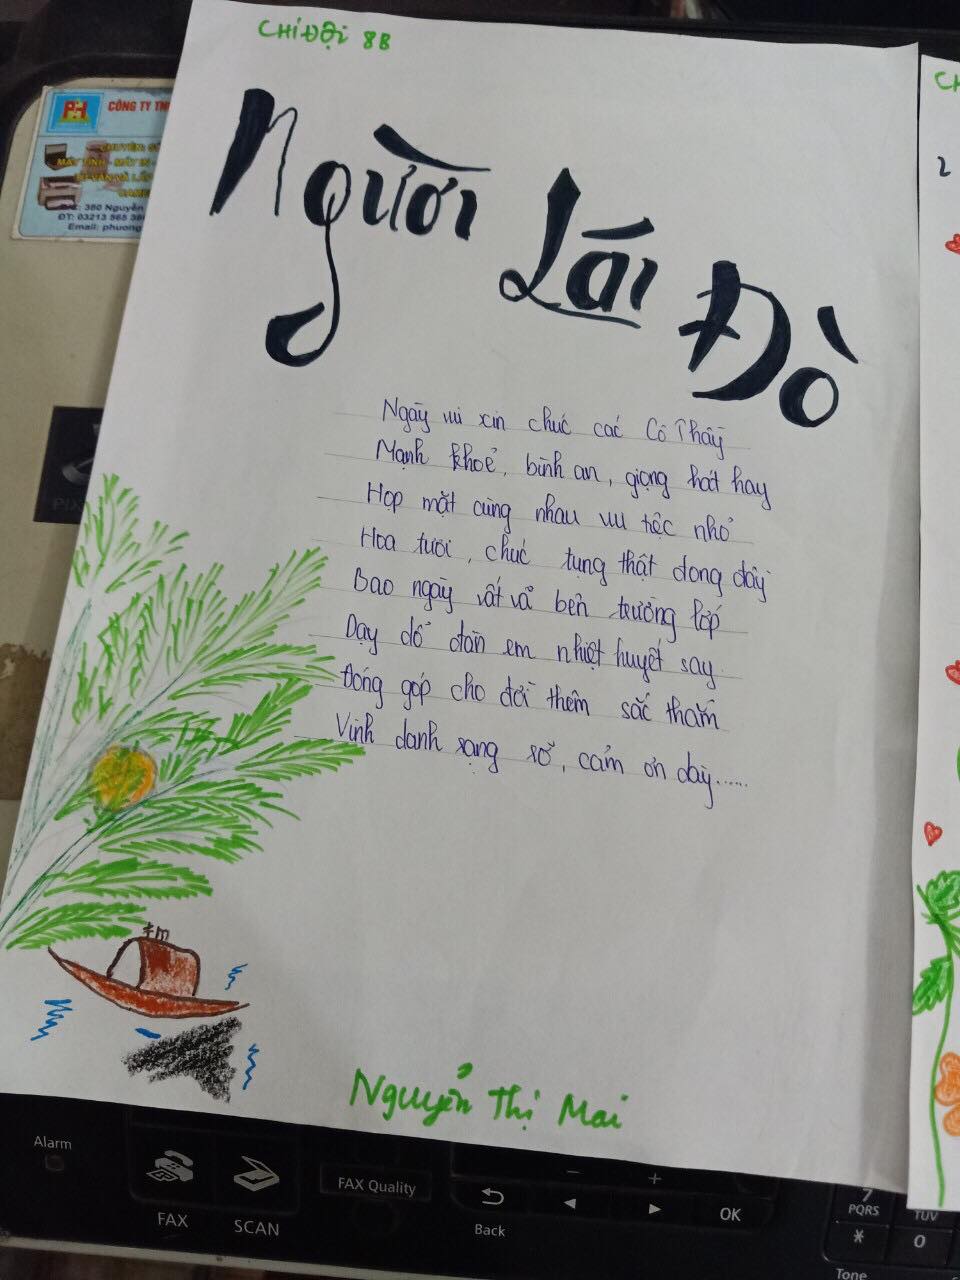 Nhớ ơn thầy cô là một trong những giá trị truyền thống của nền giáo dục Việt Nam. Hãy xem hình ảnh liên quan để cảm nhận giá trị và ý nghĩa đặc biệt của sự tri ân và kính trọng đối với các thầy cô giáo.